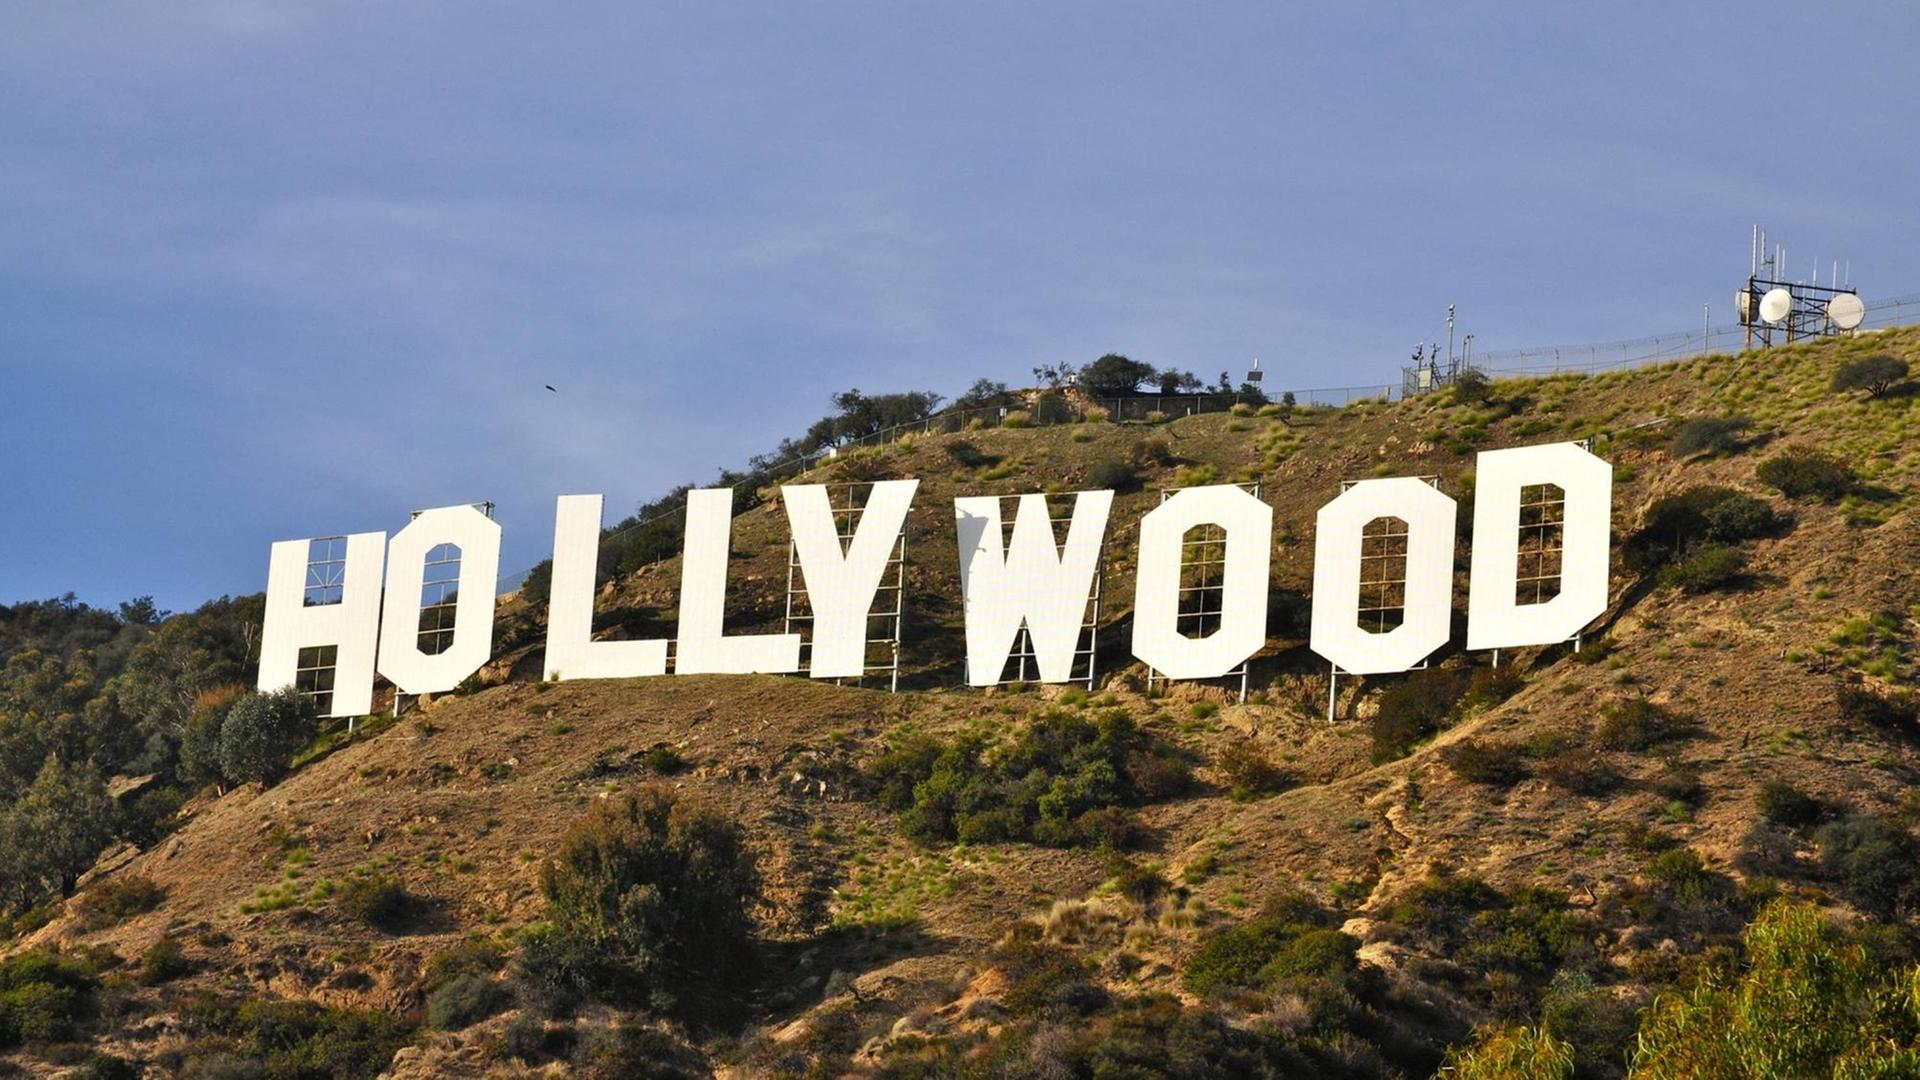 Das Hollywood-Schild ist sehr bekannt.